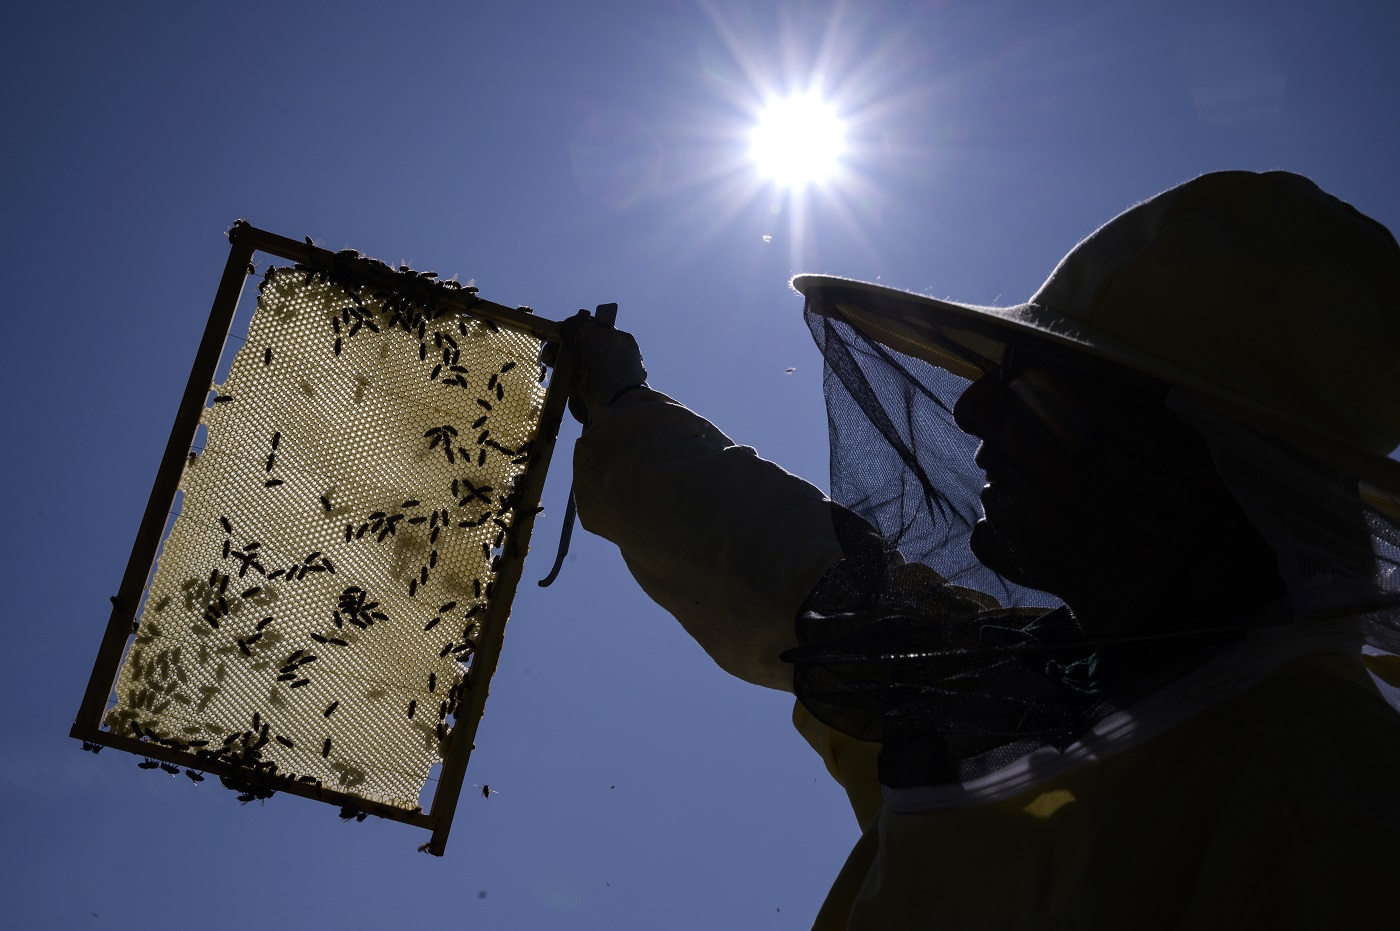  سنة سوداء لمربي النحل في أوروبا  162-022605-bees-honey-6